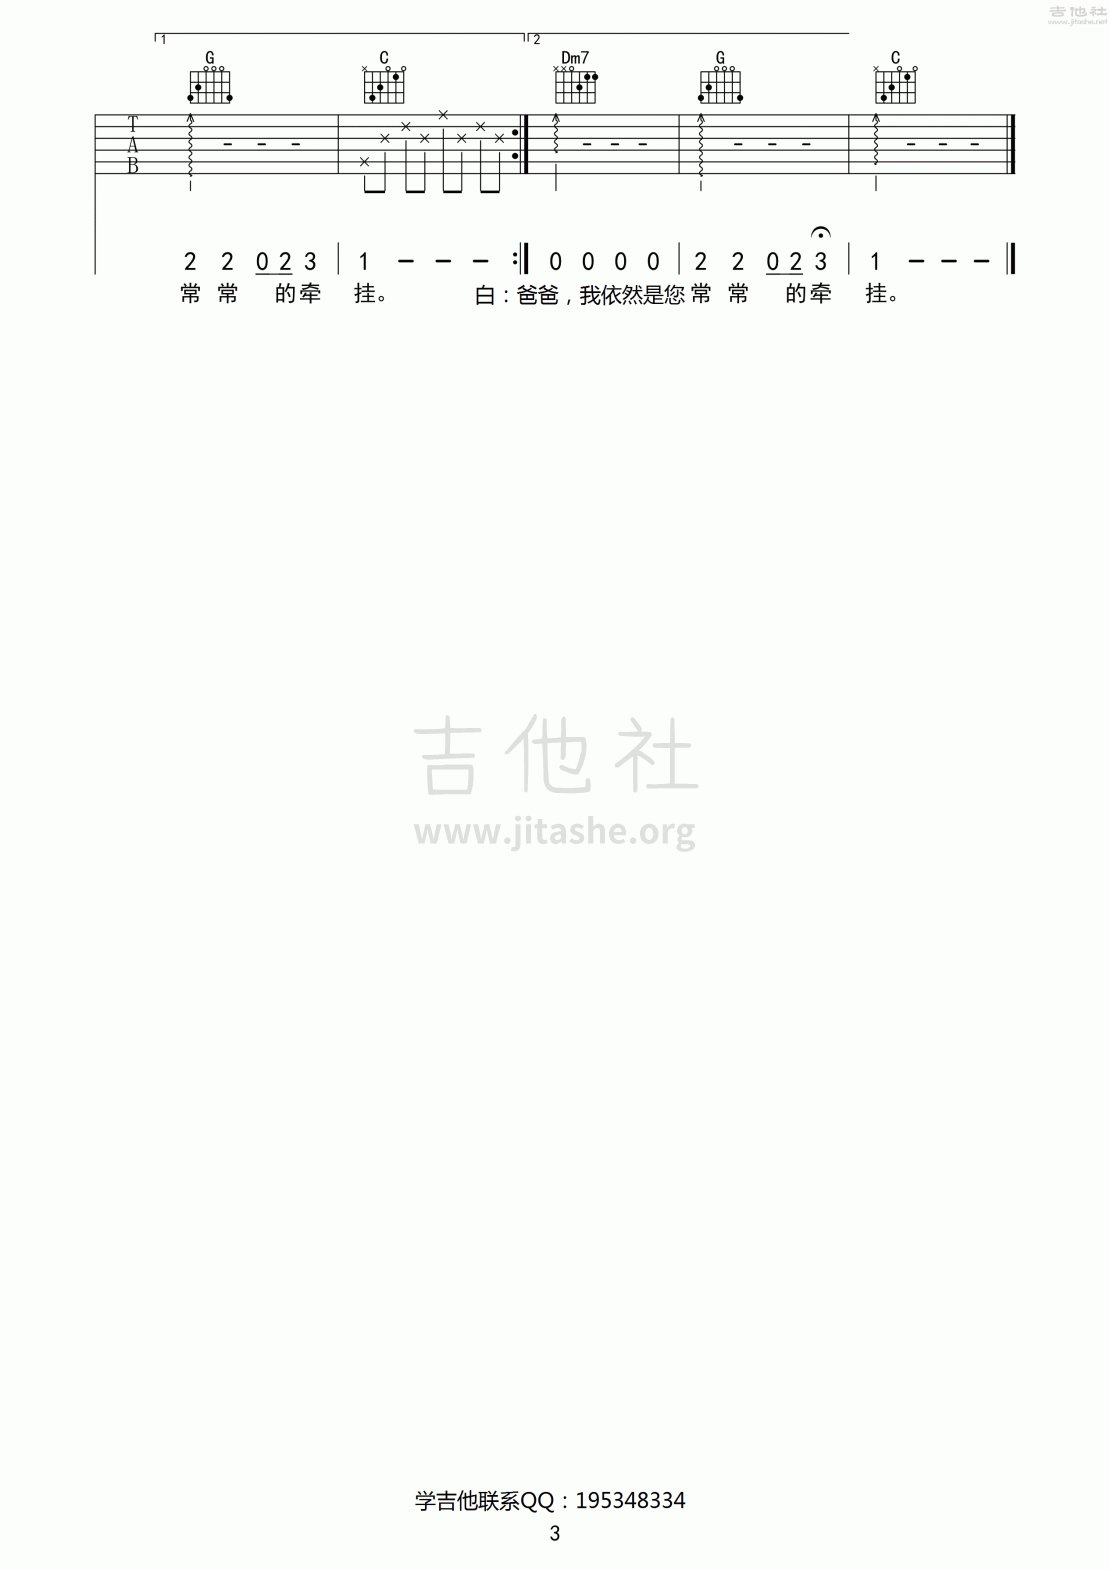 打印:沐阳(电视剧《麻辣女兵》插曲)吉他谱_原声带(OST;Original Soundtrack;电影)_沐阳_3.gif